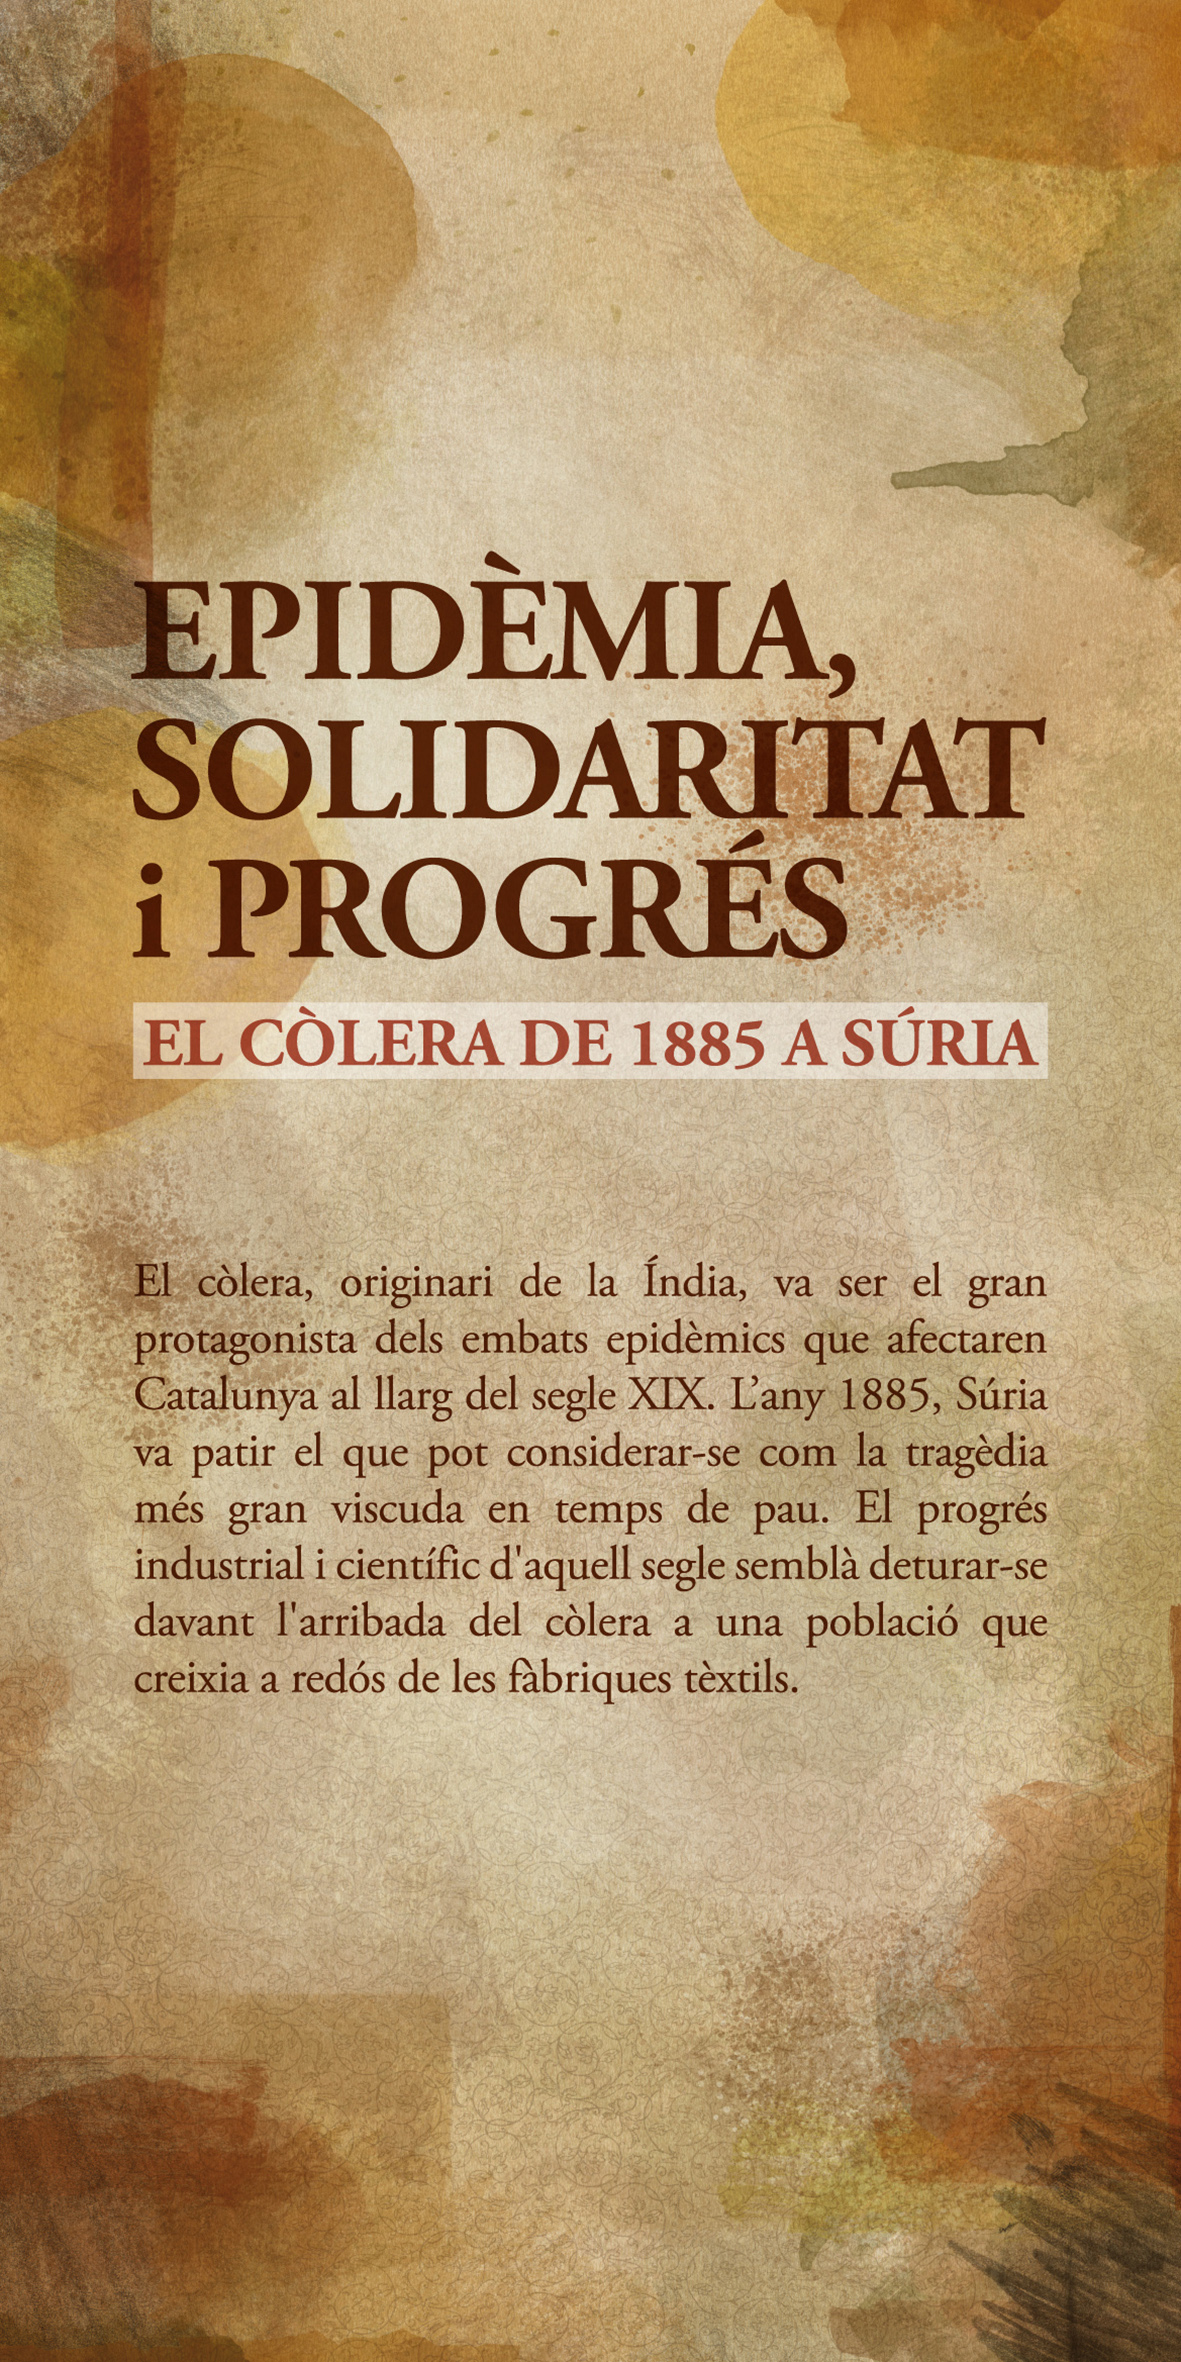 PlafÃ³ de l'exposicio 'EpidÃ¨mia, solidaritat i progrÃ©s. El cÃ²lera de 1885 a SÃºria'.